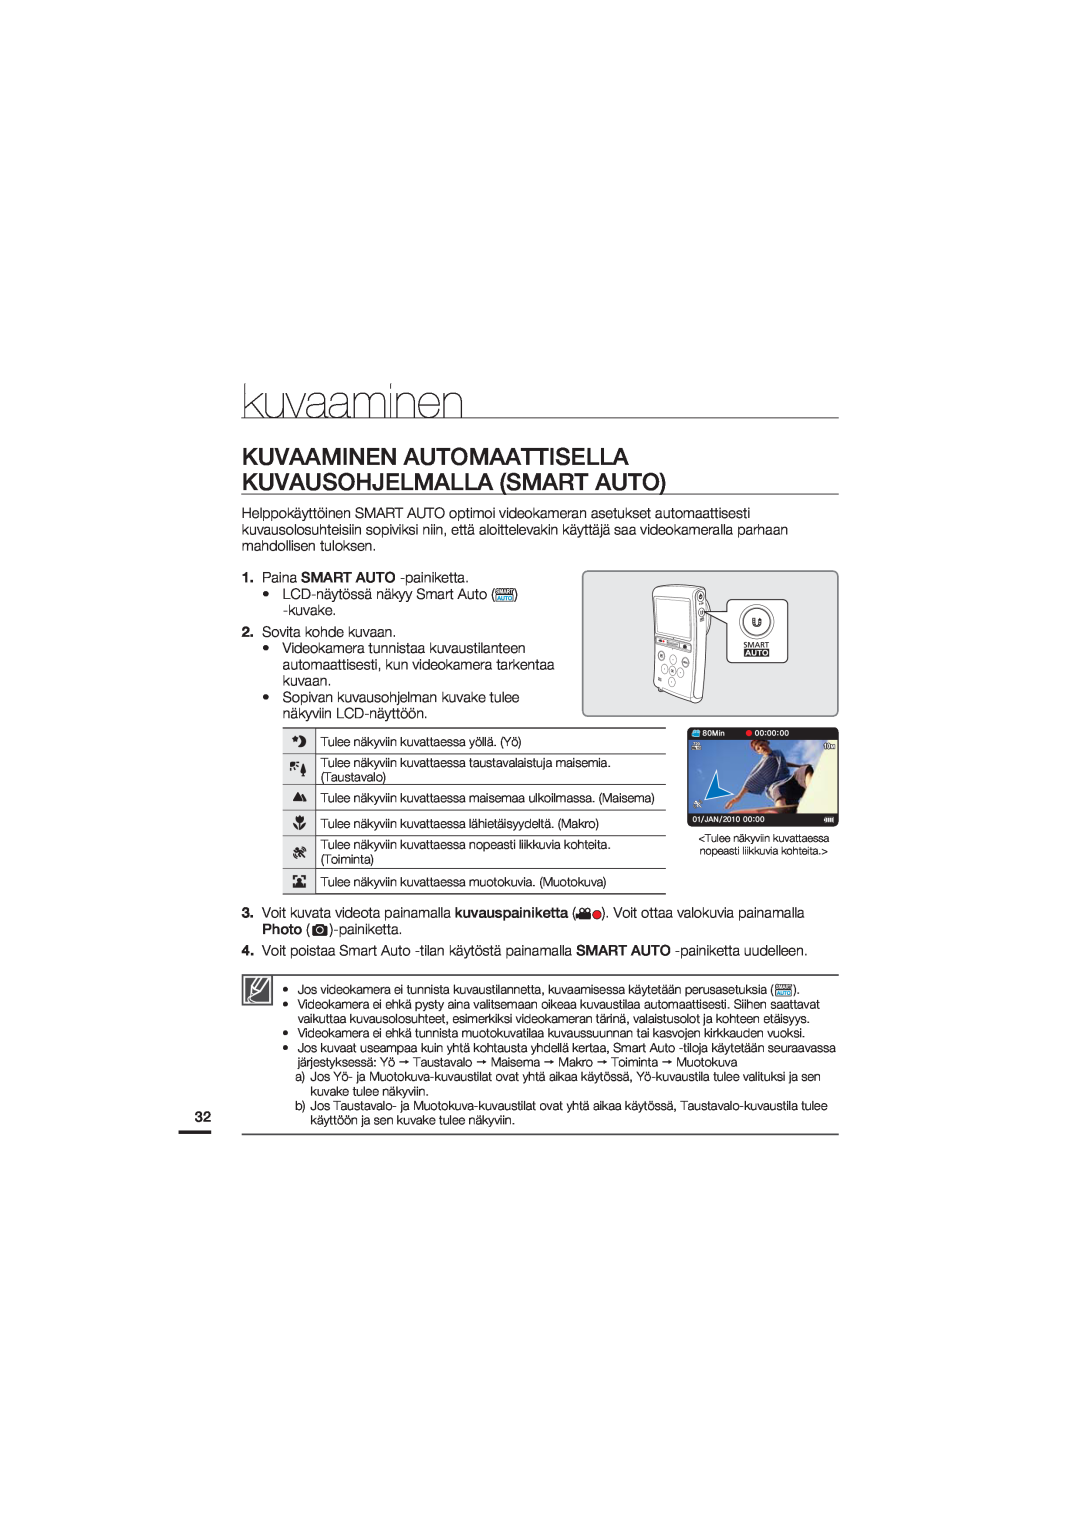 Samsung HMX-U20BP/EDC manual Kuvaaminen Automaattisella Kuvausohjelmalla Smart Auto, kuvaaminen 